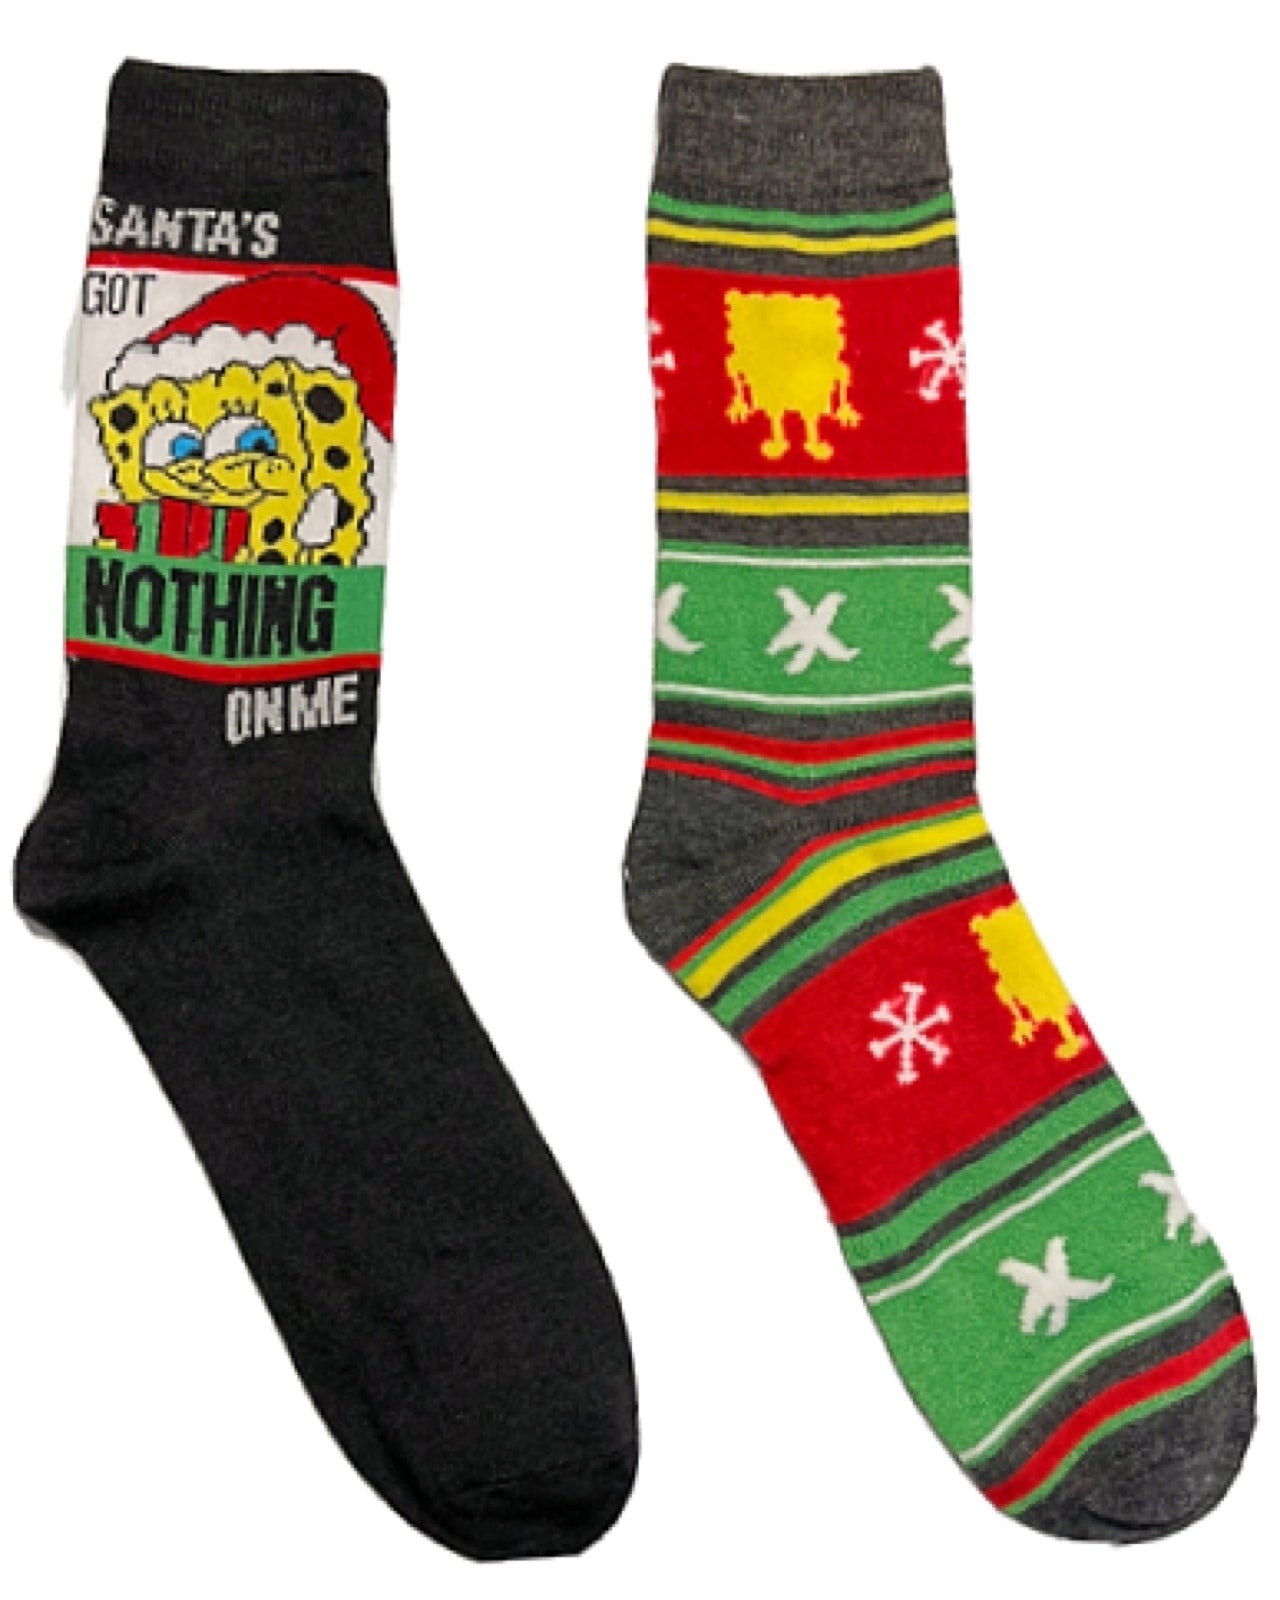 Spongebob SquarePants Men's Christmas Socks Santa Bob 'Ho HO Ho